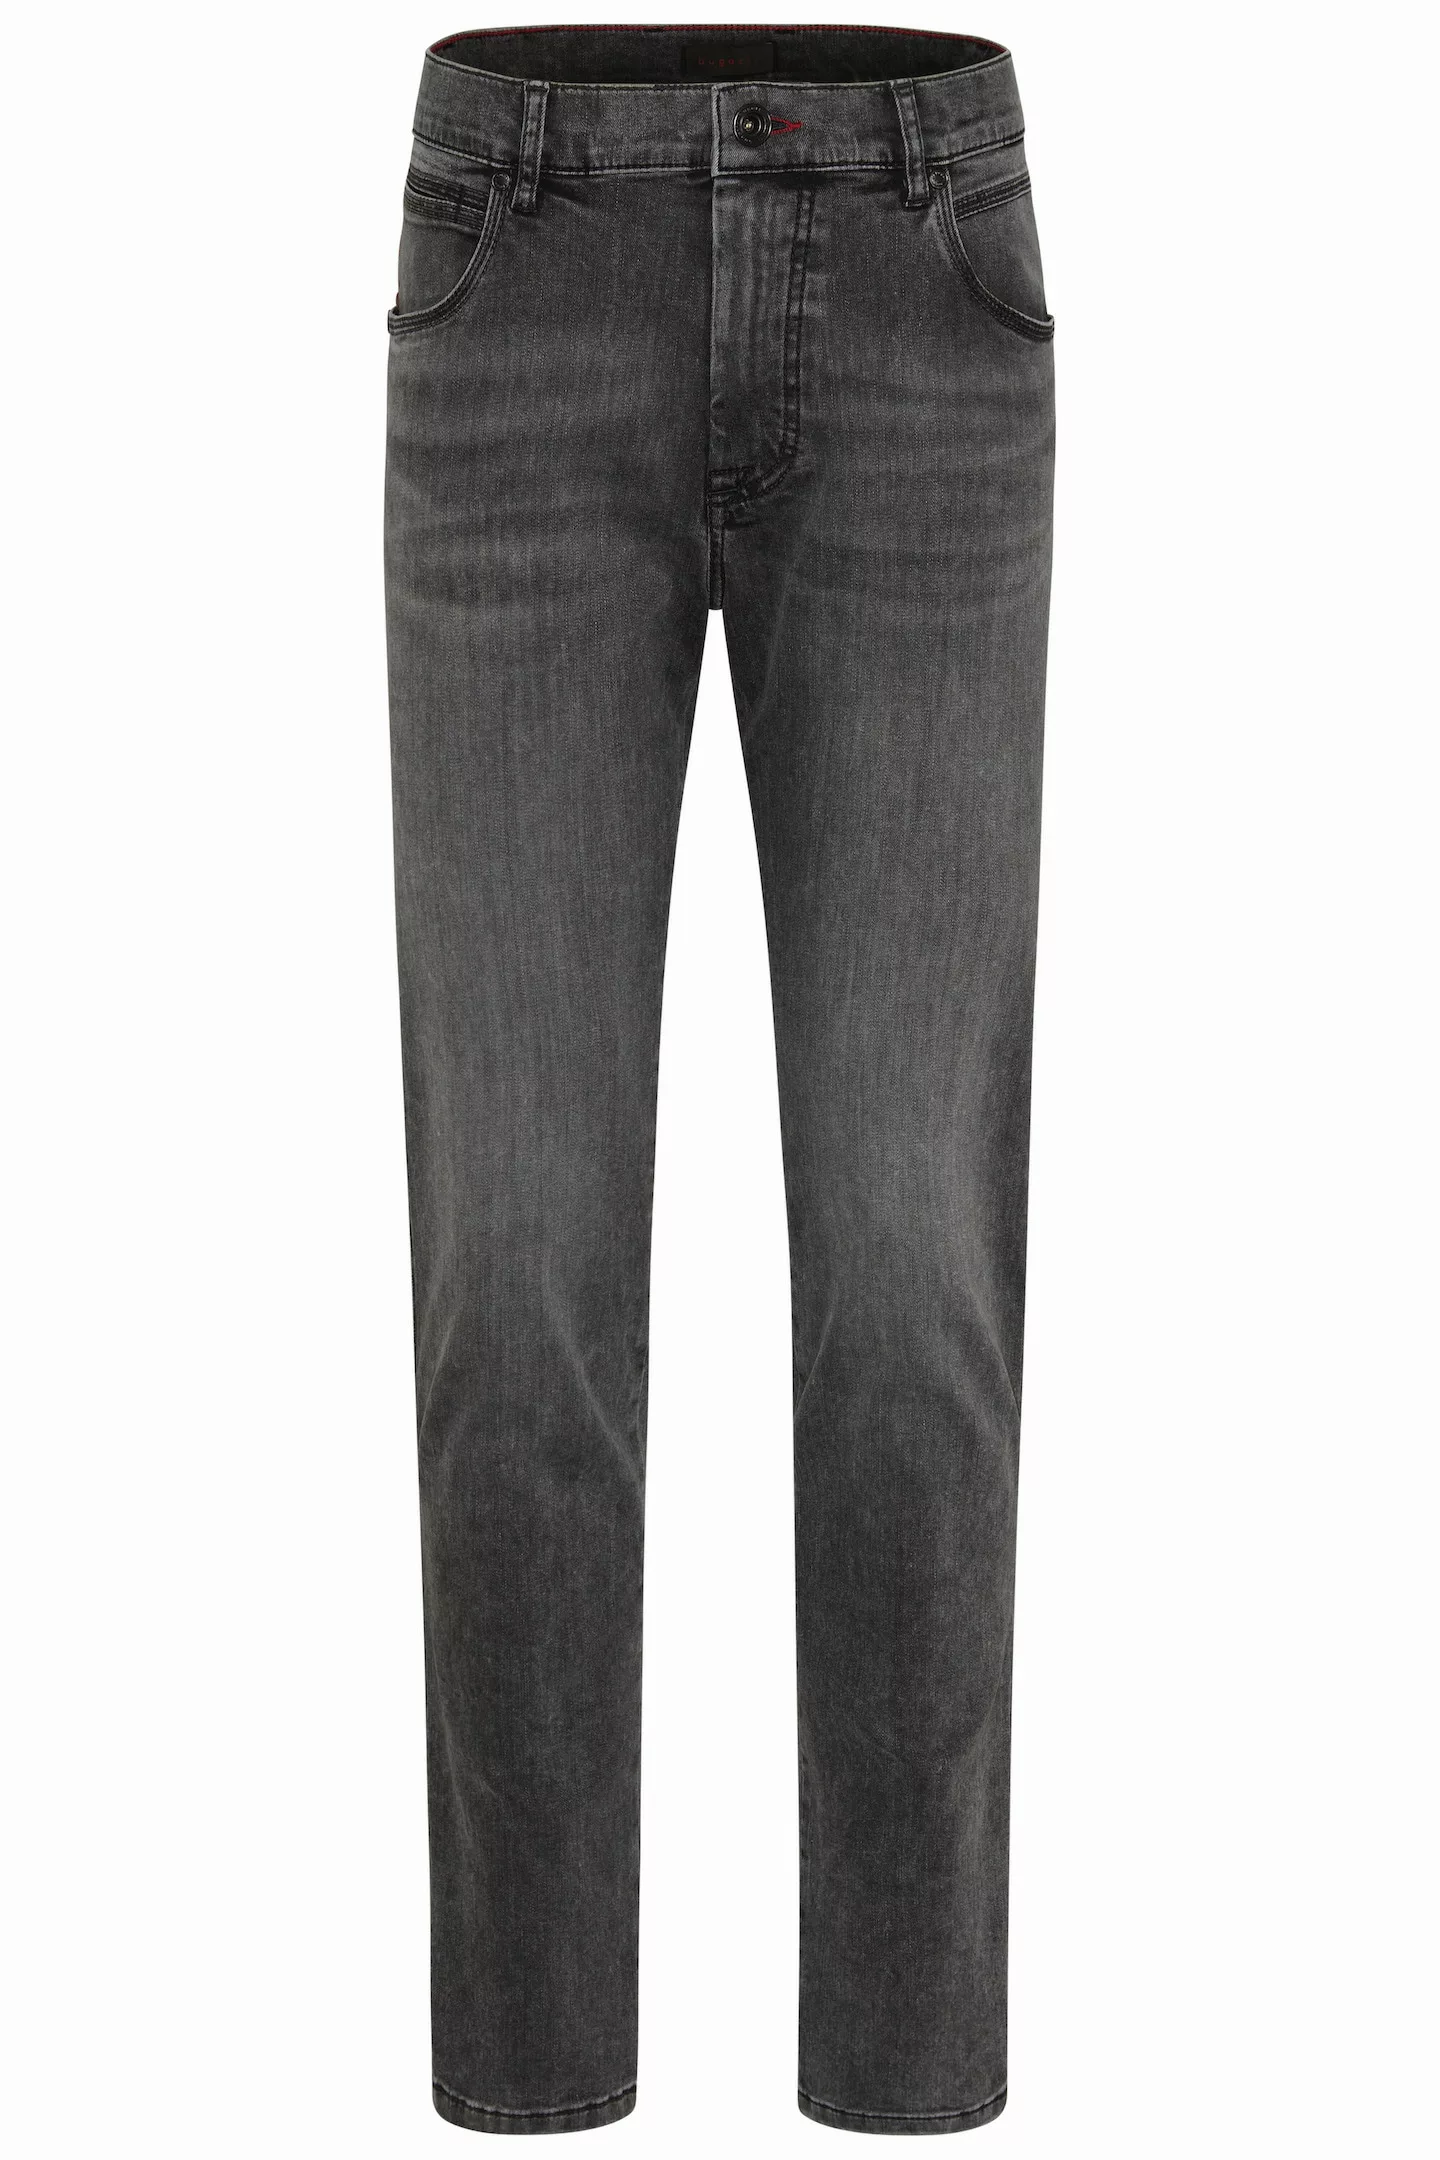 bugatti 5-Pocket-Jeans, im Used Wash Look günstig online kaufen